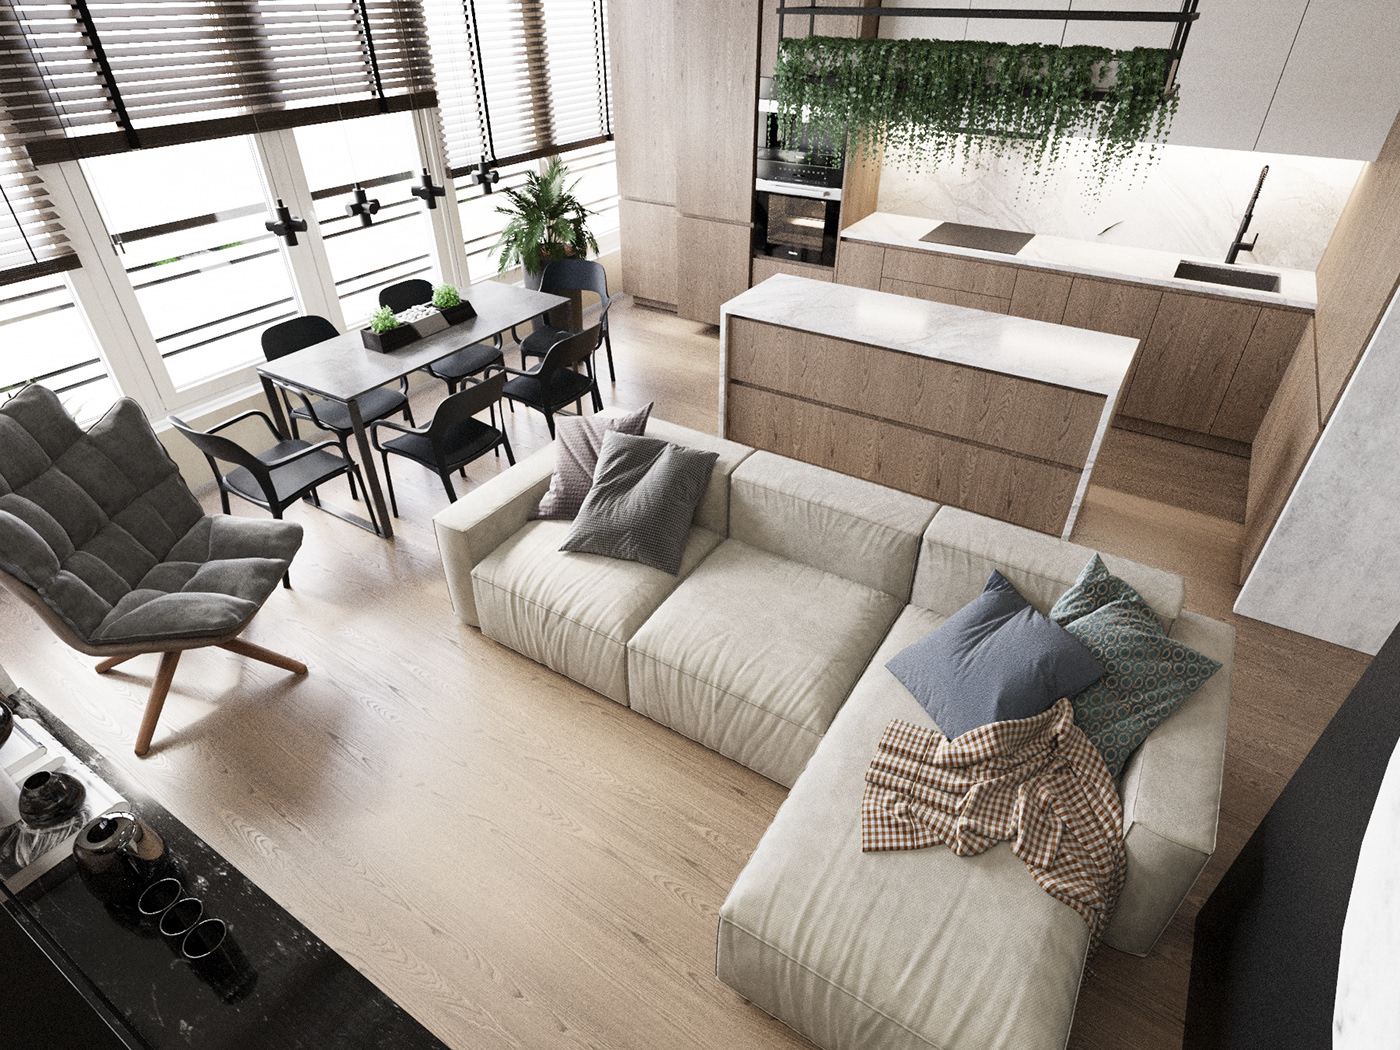 3D 3ds max architecture corona design interior design  modern Render visualization